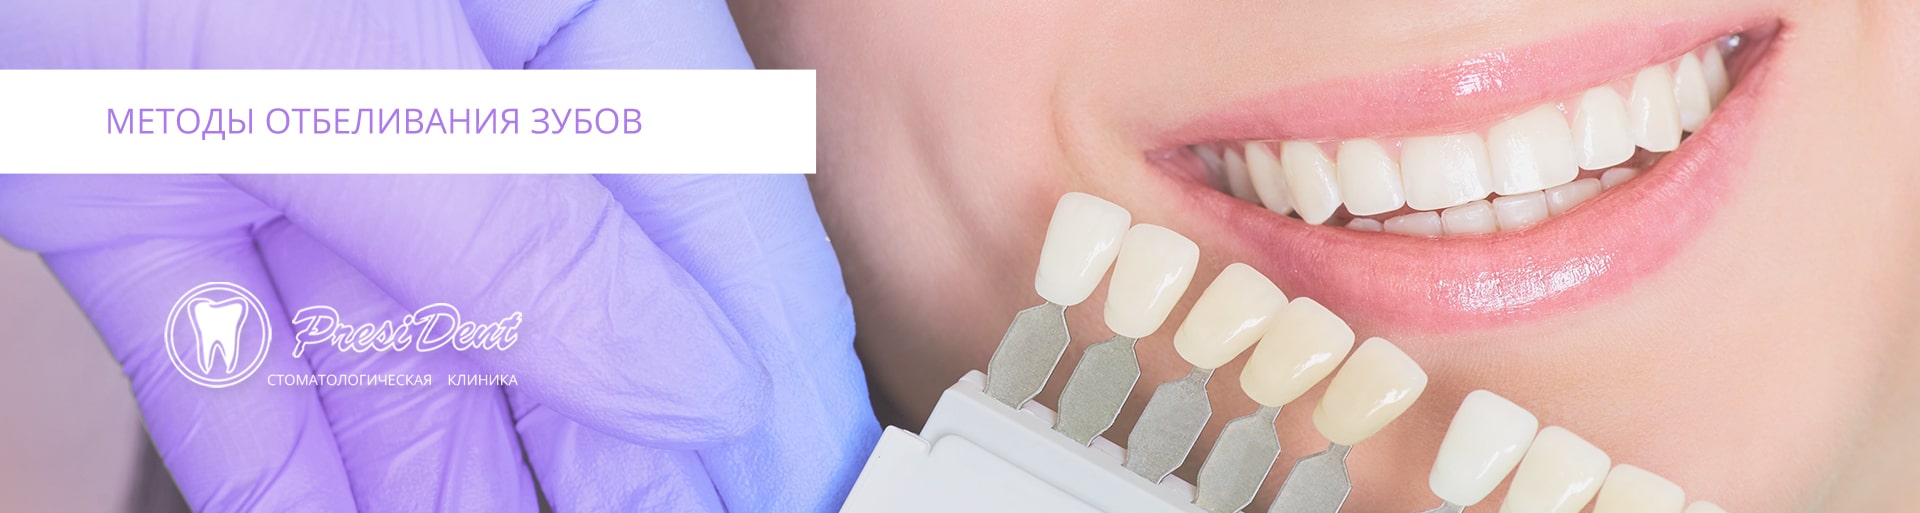 Методика отбеливания зубов